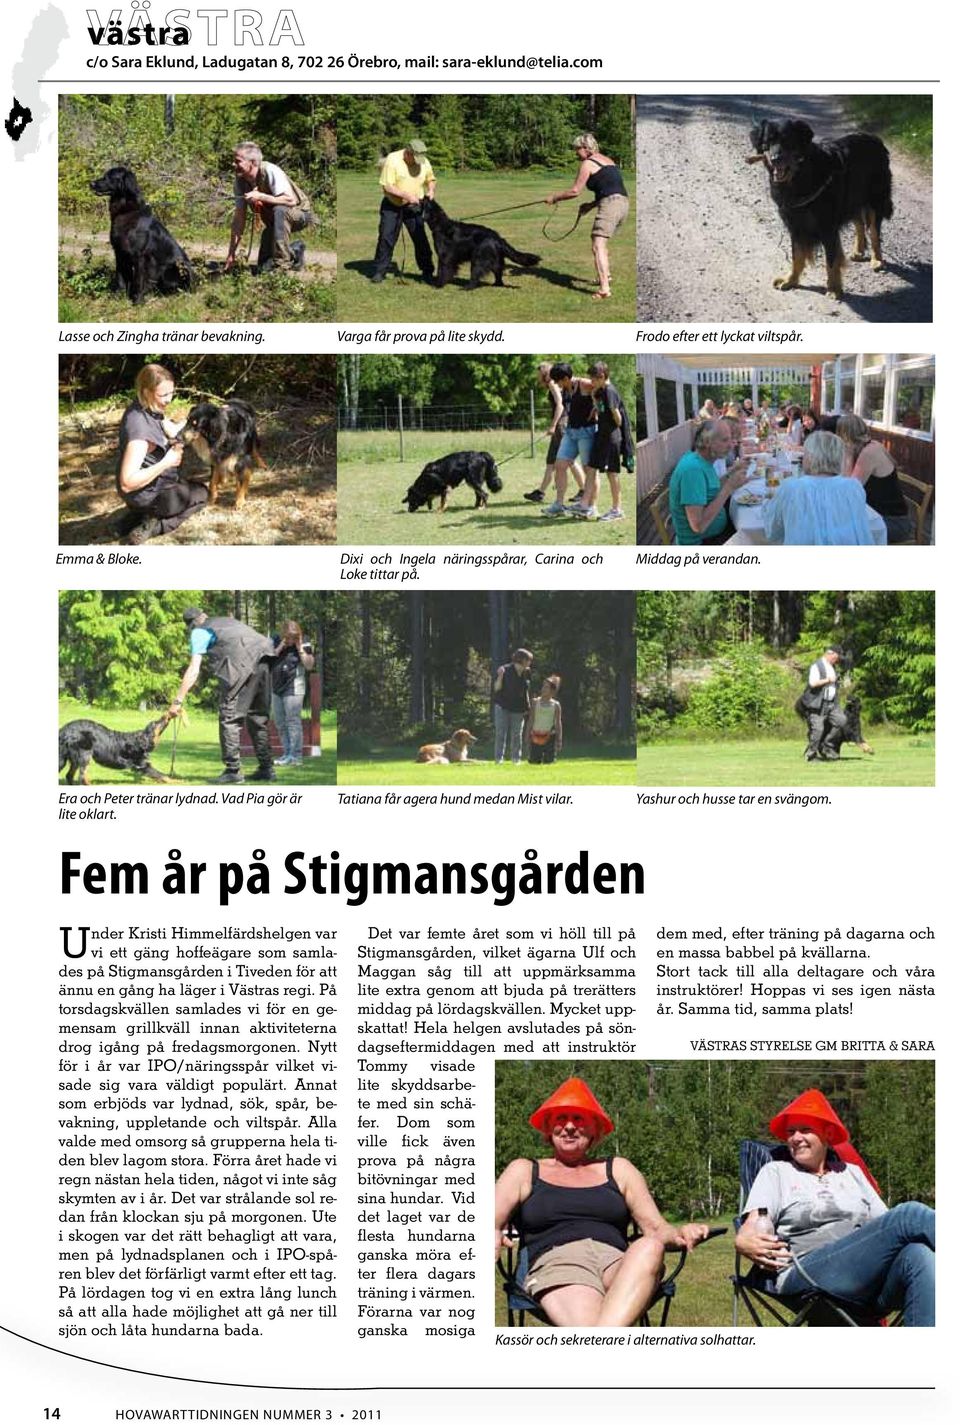 Fem år på Stigmansgården Under Kristi Himmelfärdshelgen var vi ett gäng hoffeägare som samlades på Stigmansgården i Tiveden för att ännu en gång ha läger i Västras regi.